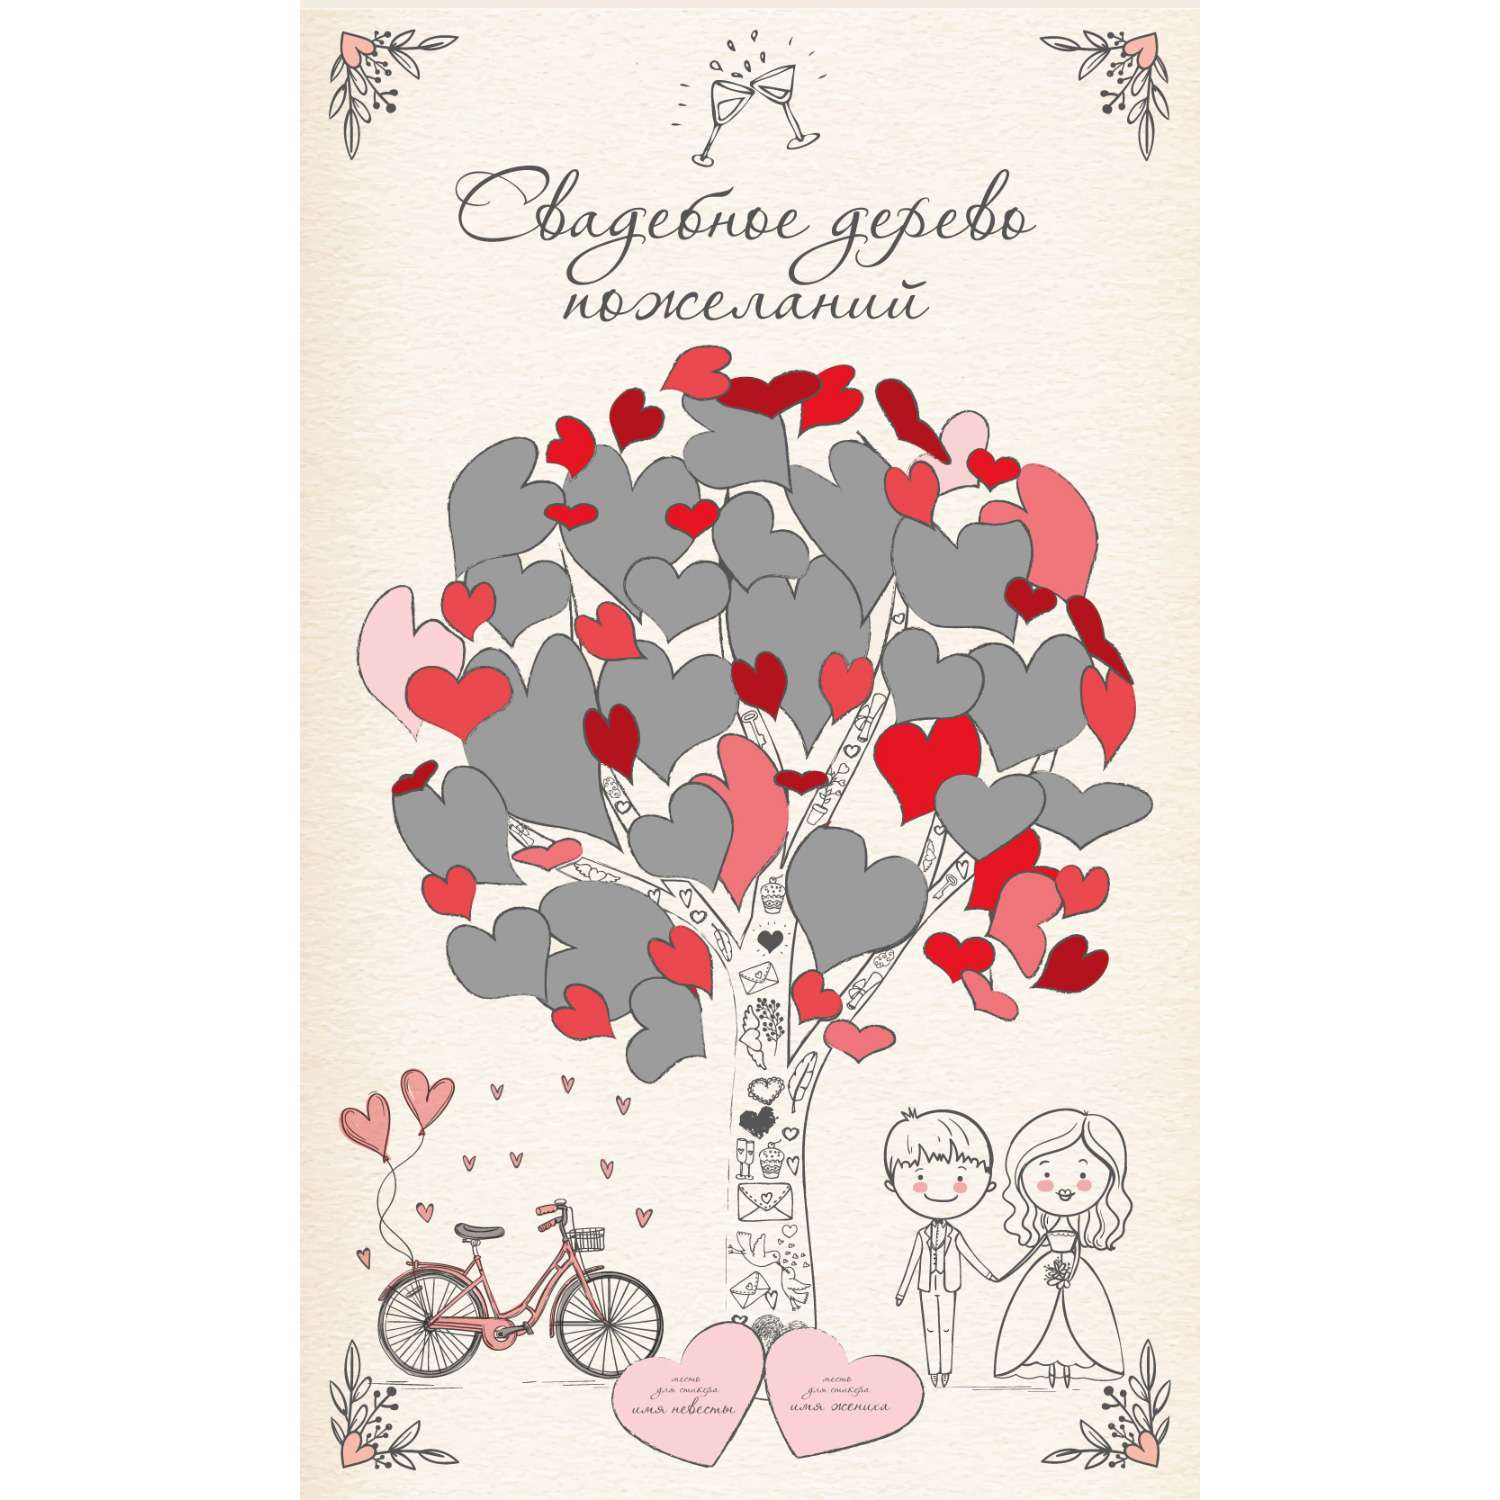 Скретч постер Правила Успеха Свадебное дерево пожеланий - фото 4